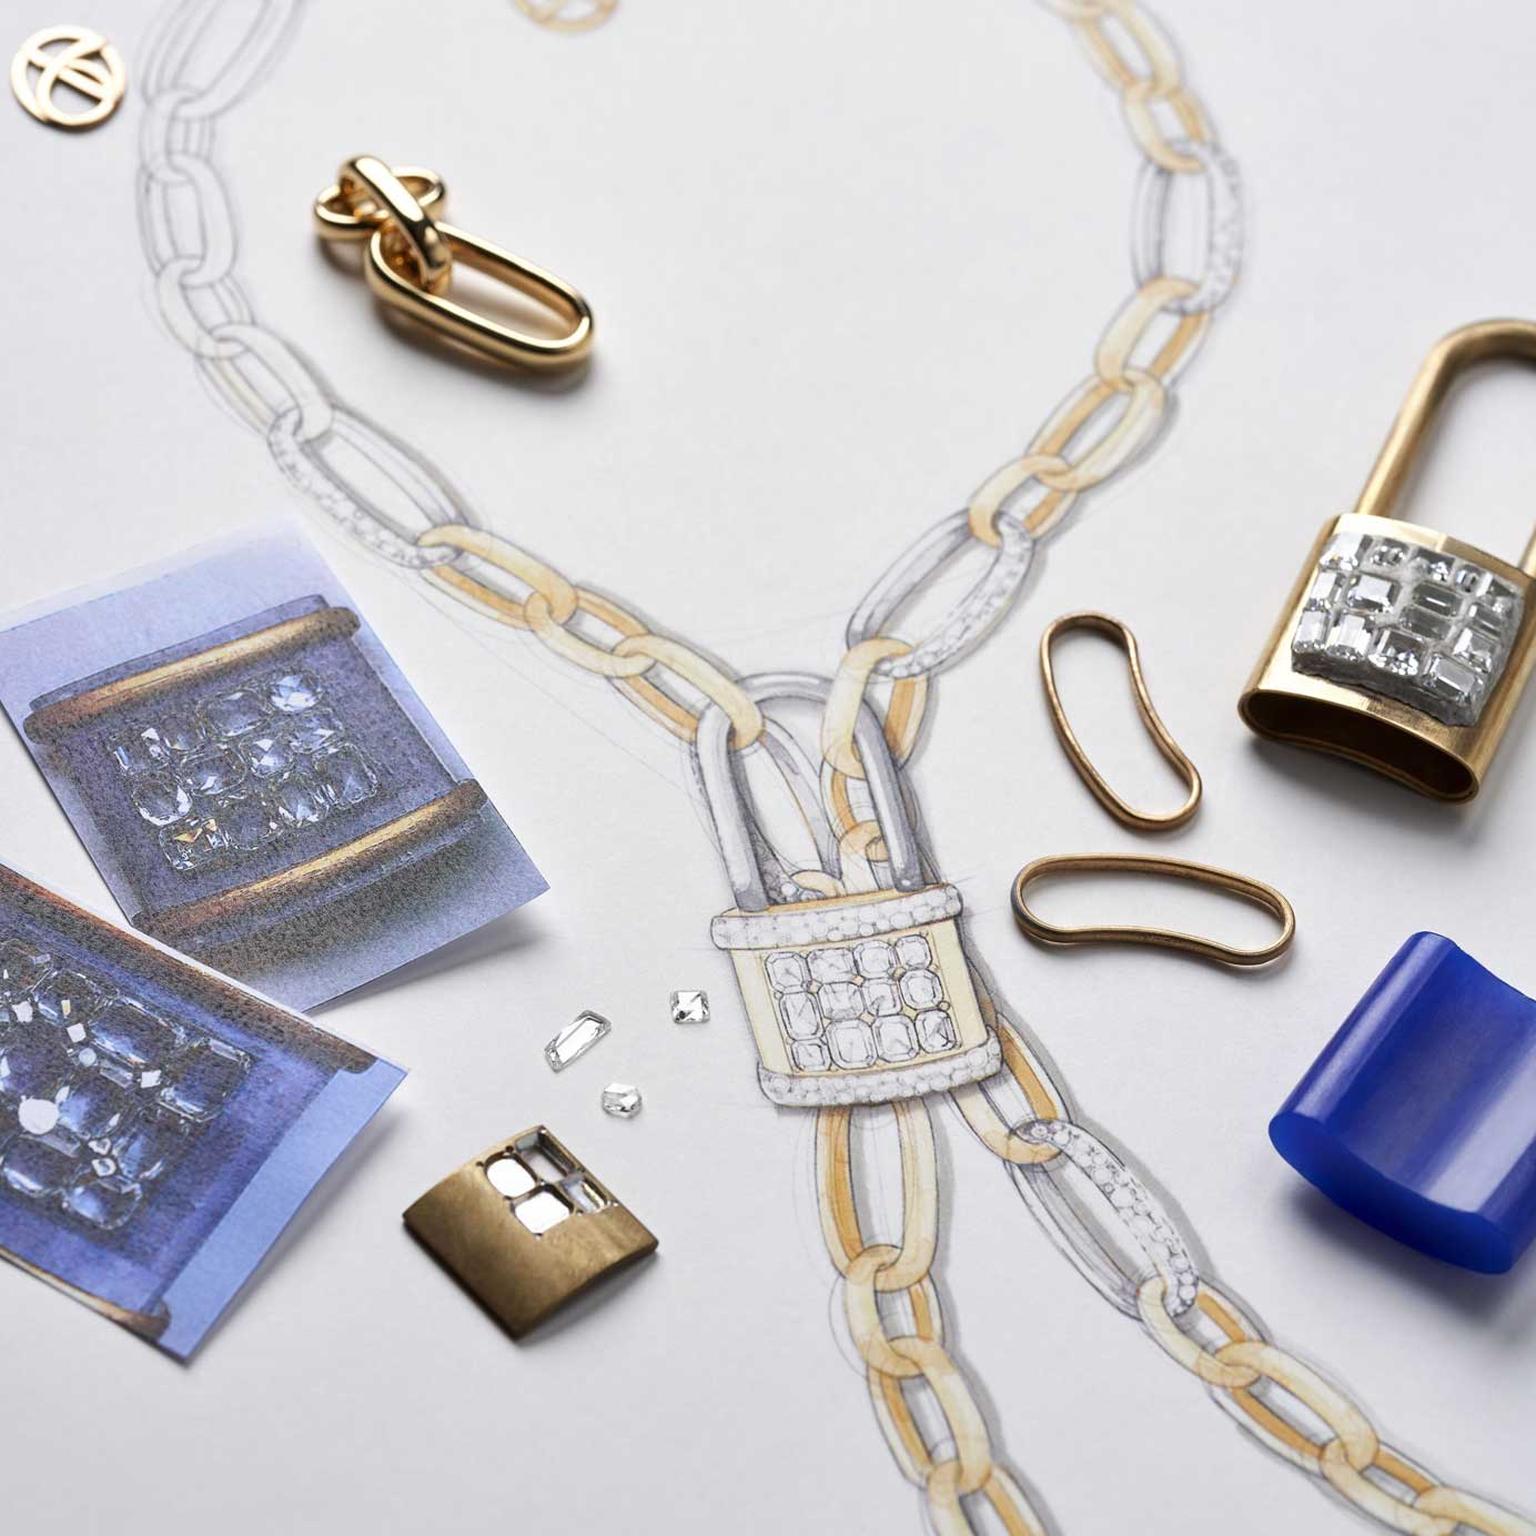 LA GIOIA di Pomellato Lock Chain necklace sketch and components 2021